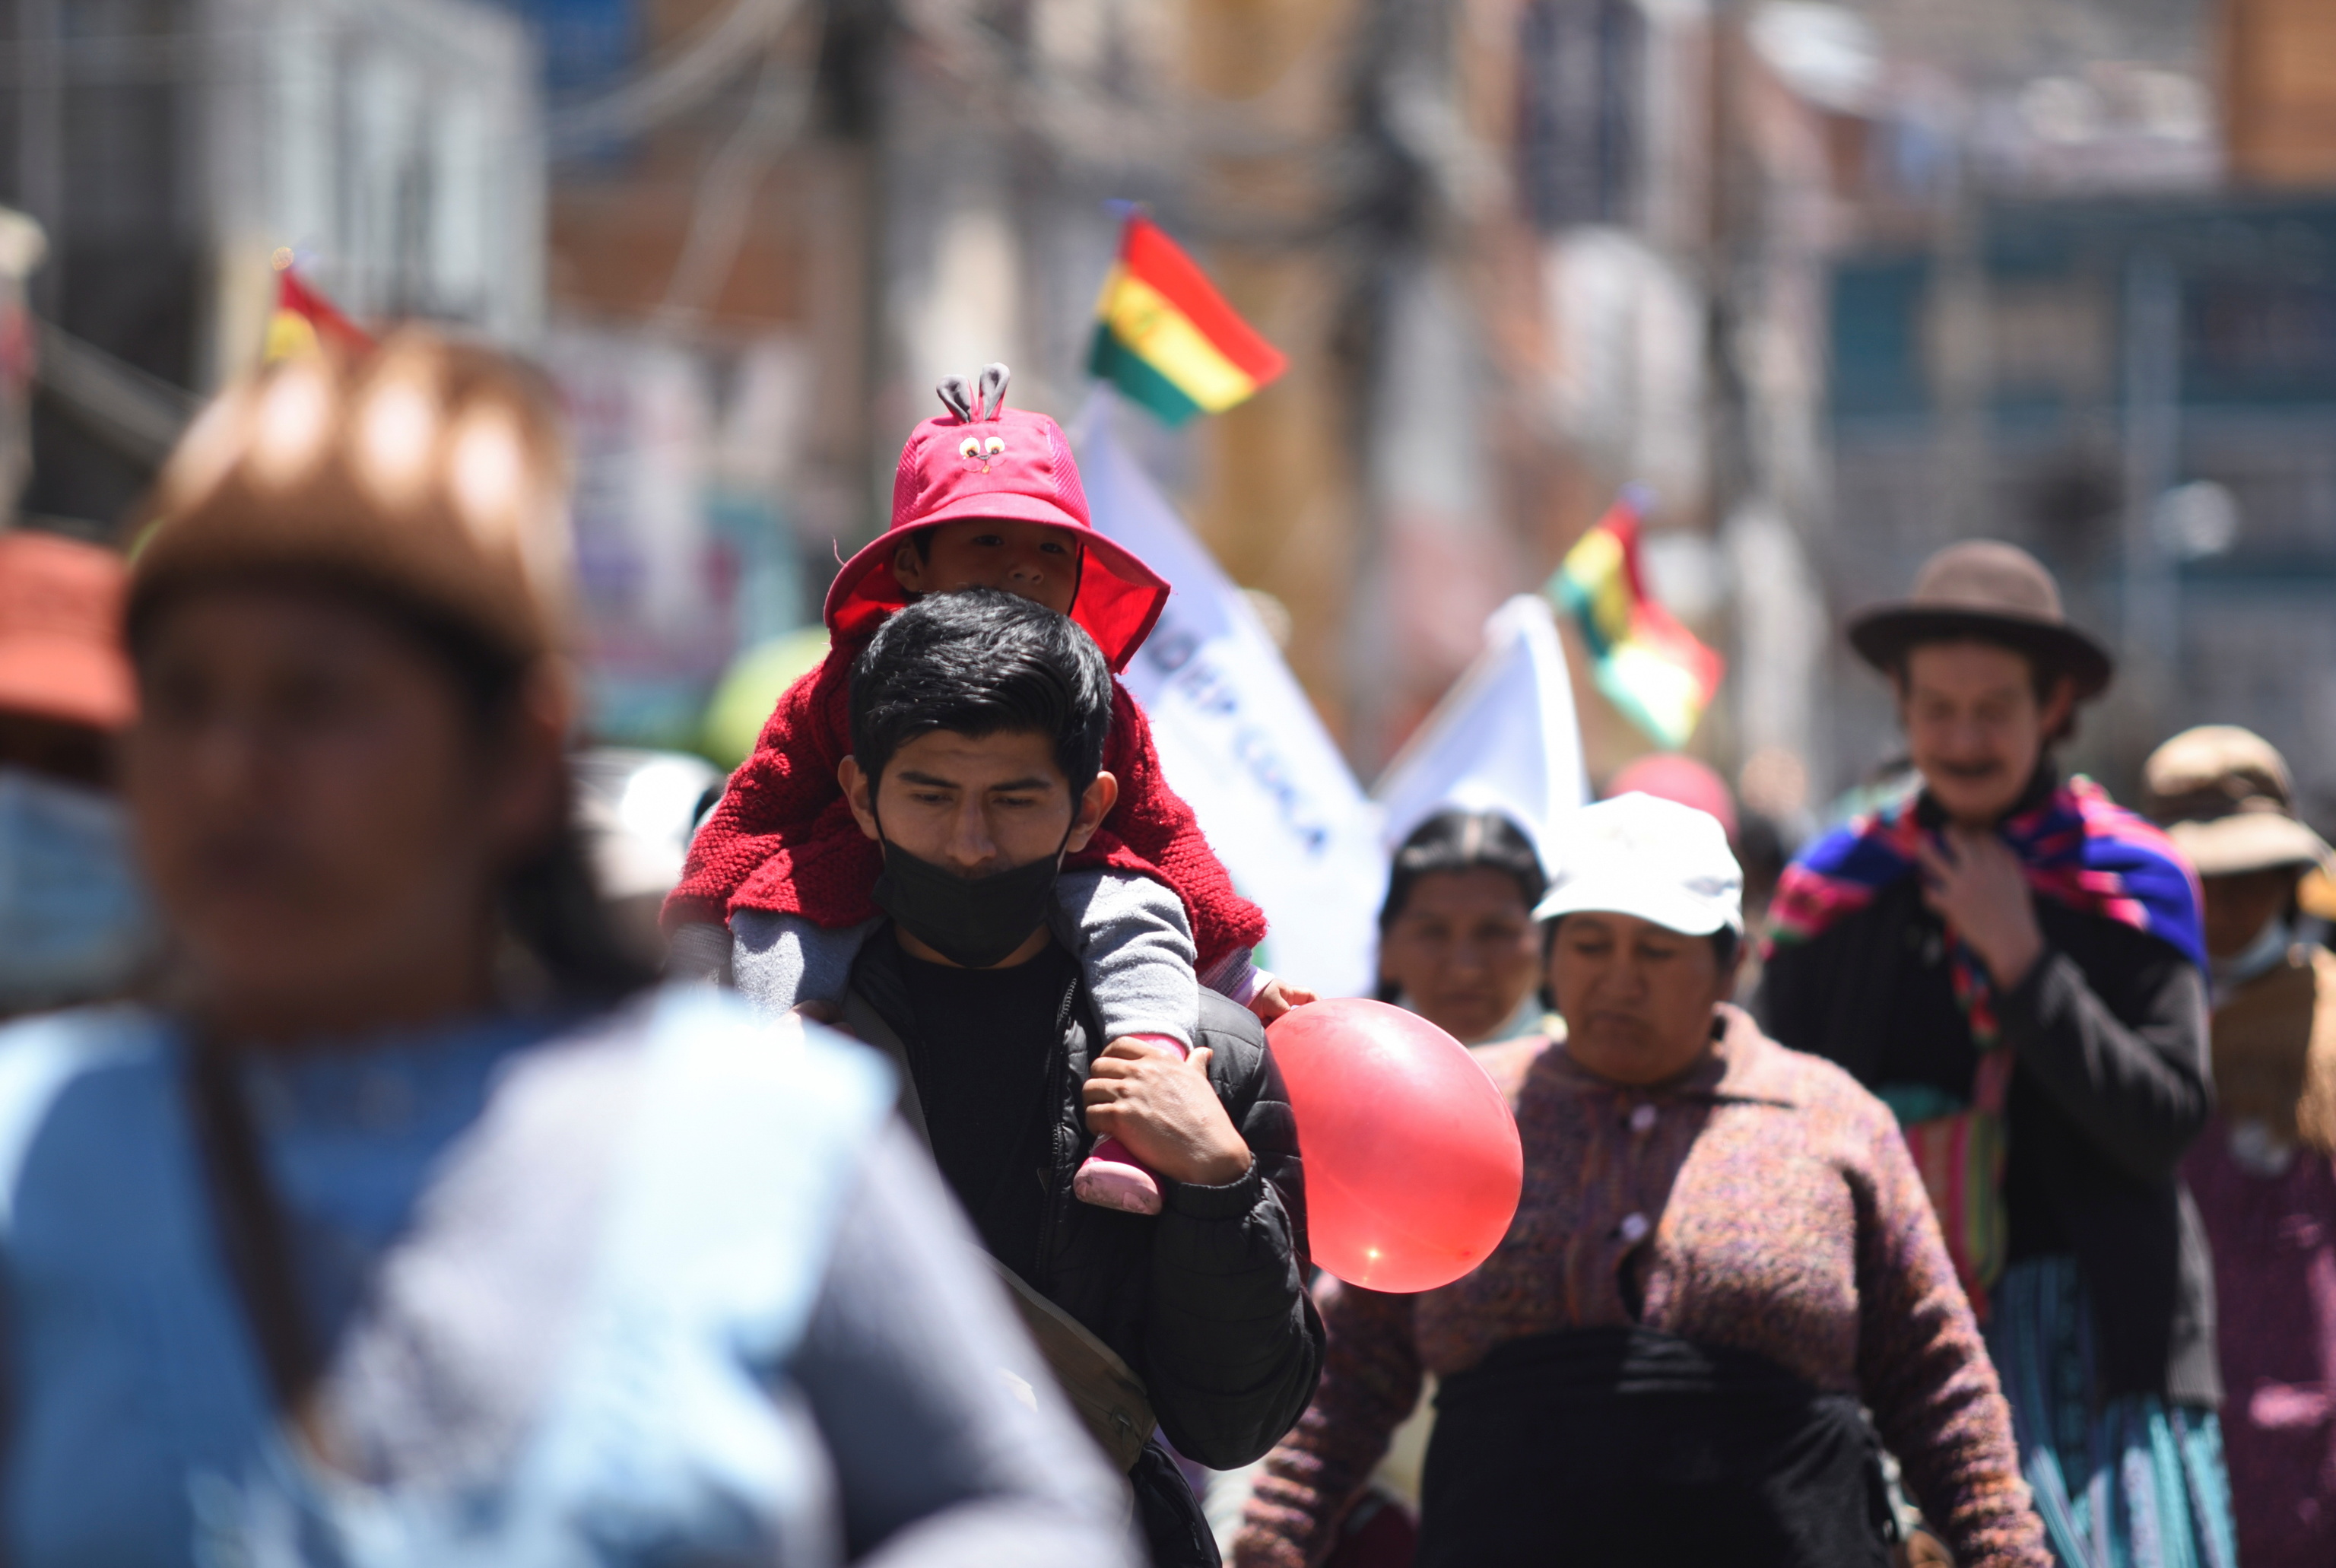 El caso de una nia de 11 aos embarazada tras sufrir abusos por parte de su abuelastro conmociona a Bolivia